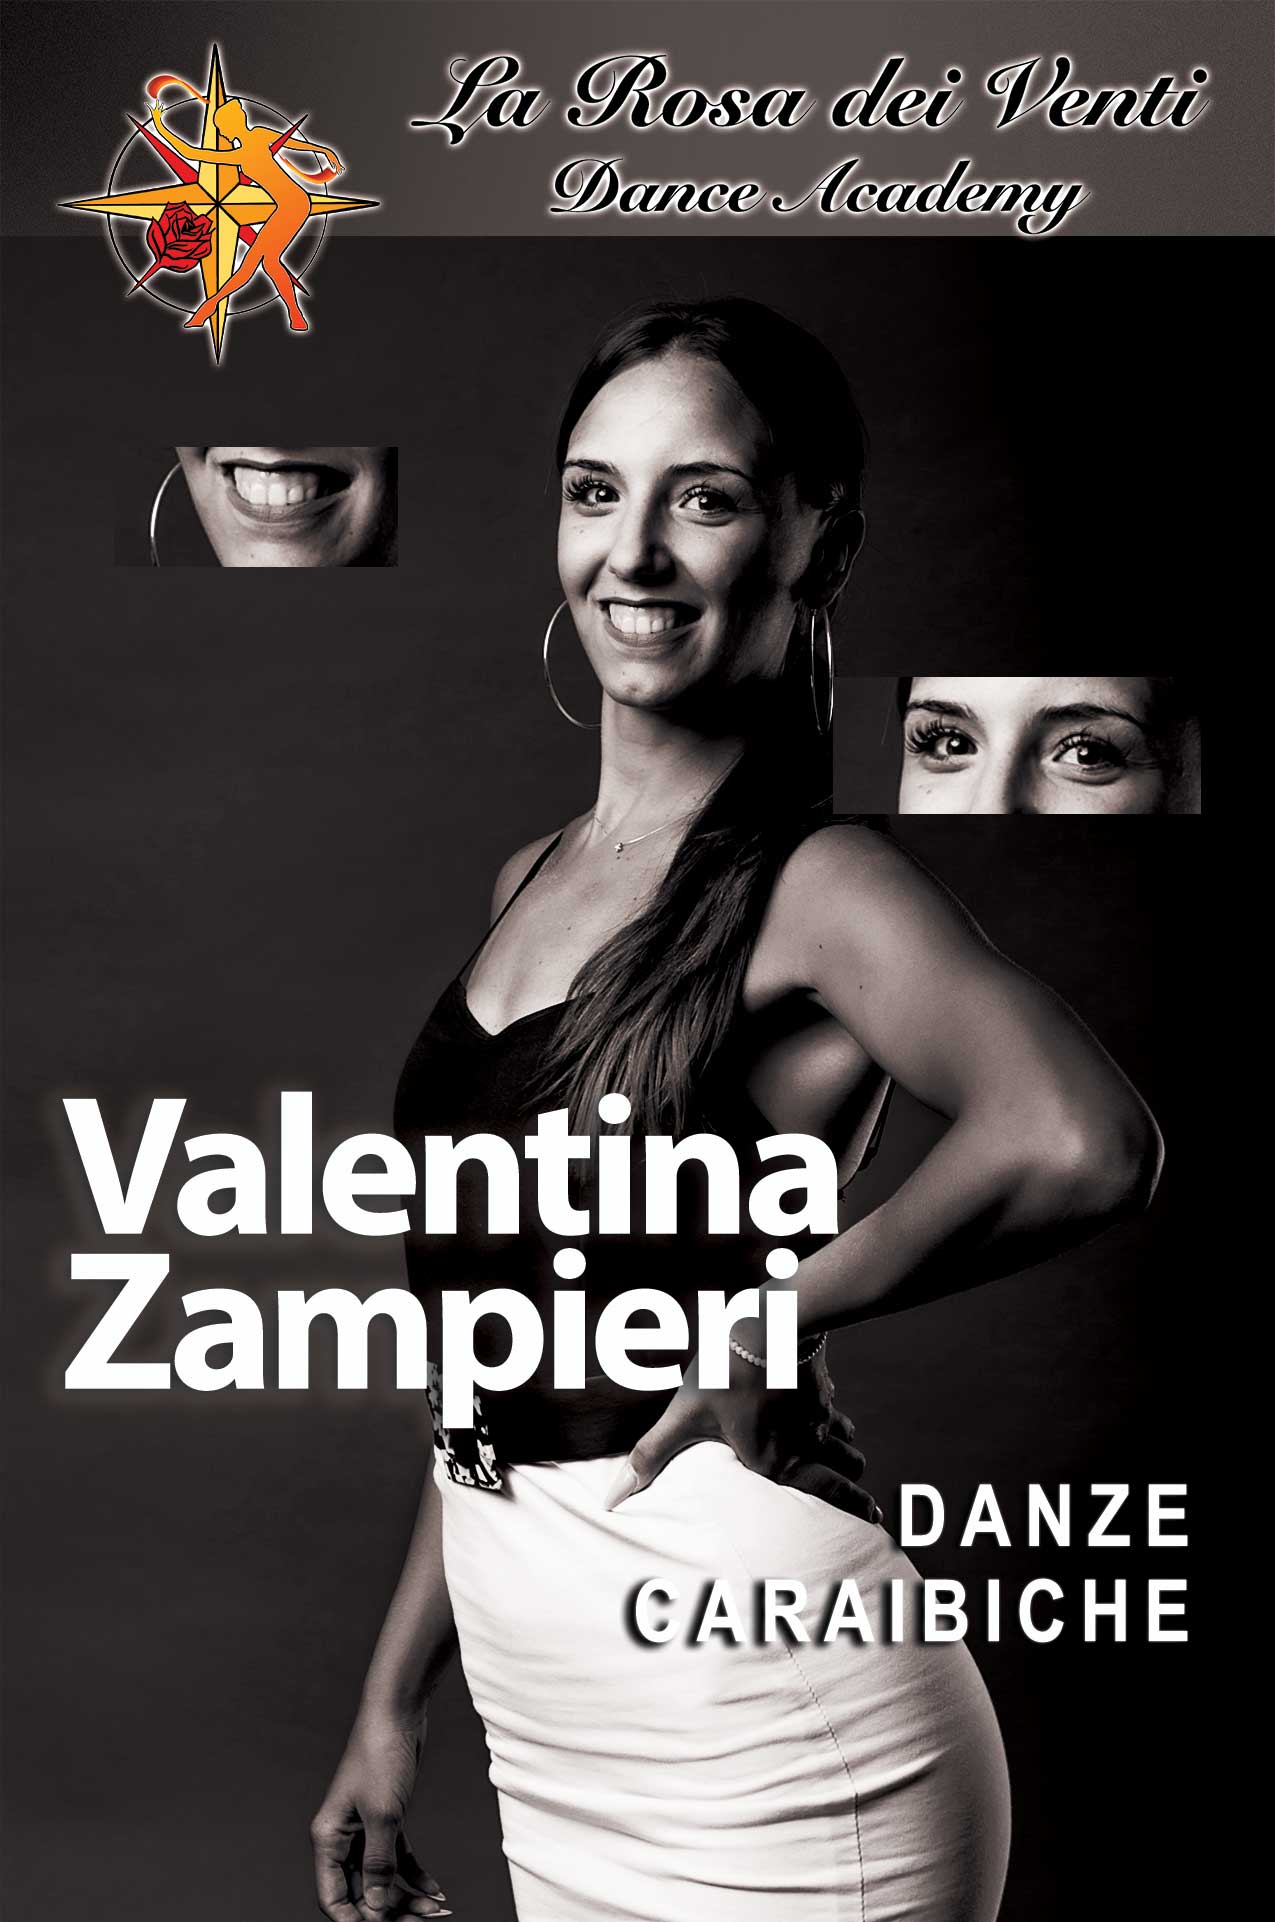 Valentina Zampieri Danze Caraibiche La Rosa dei Venti Dance Accademy